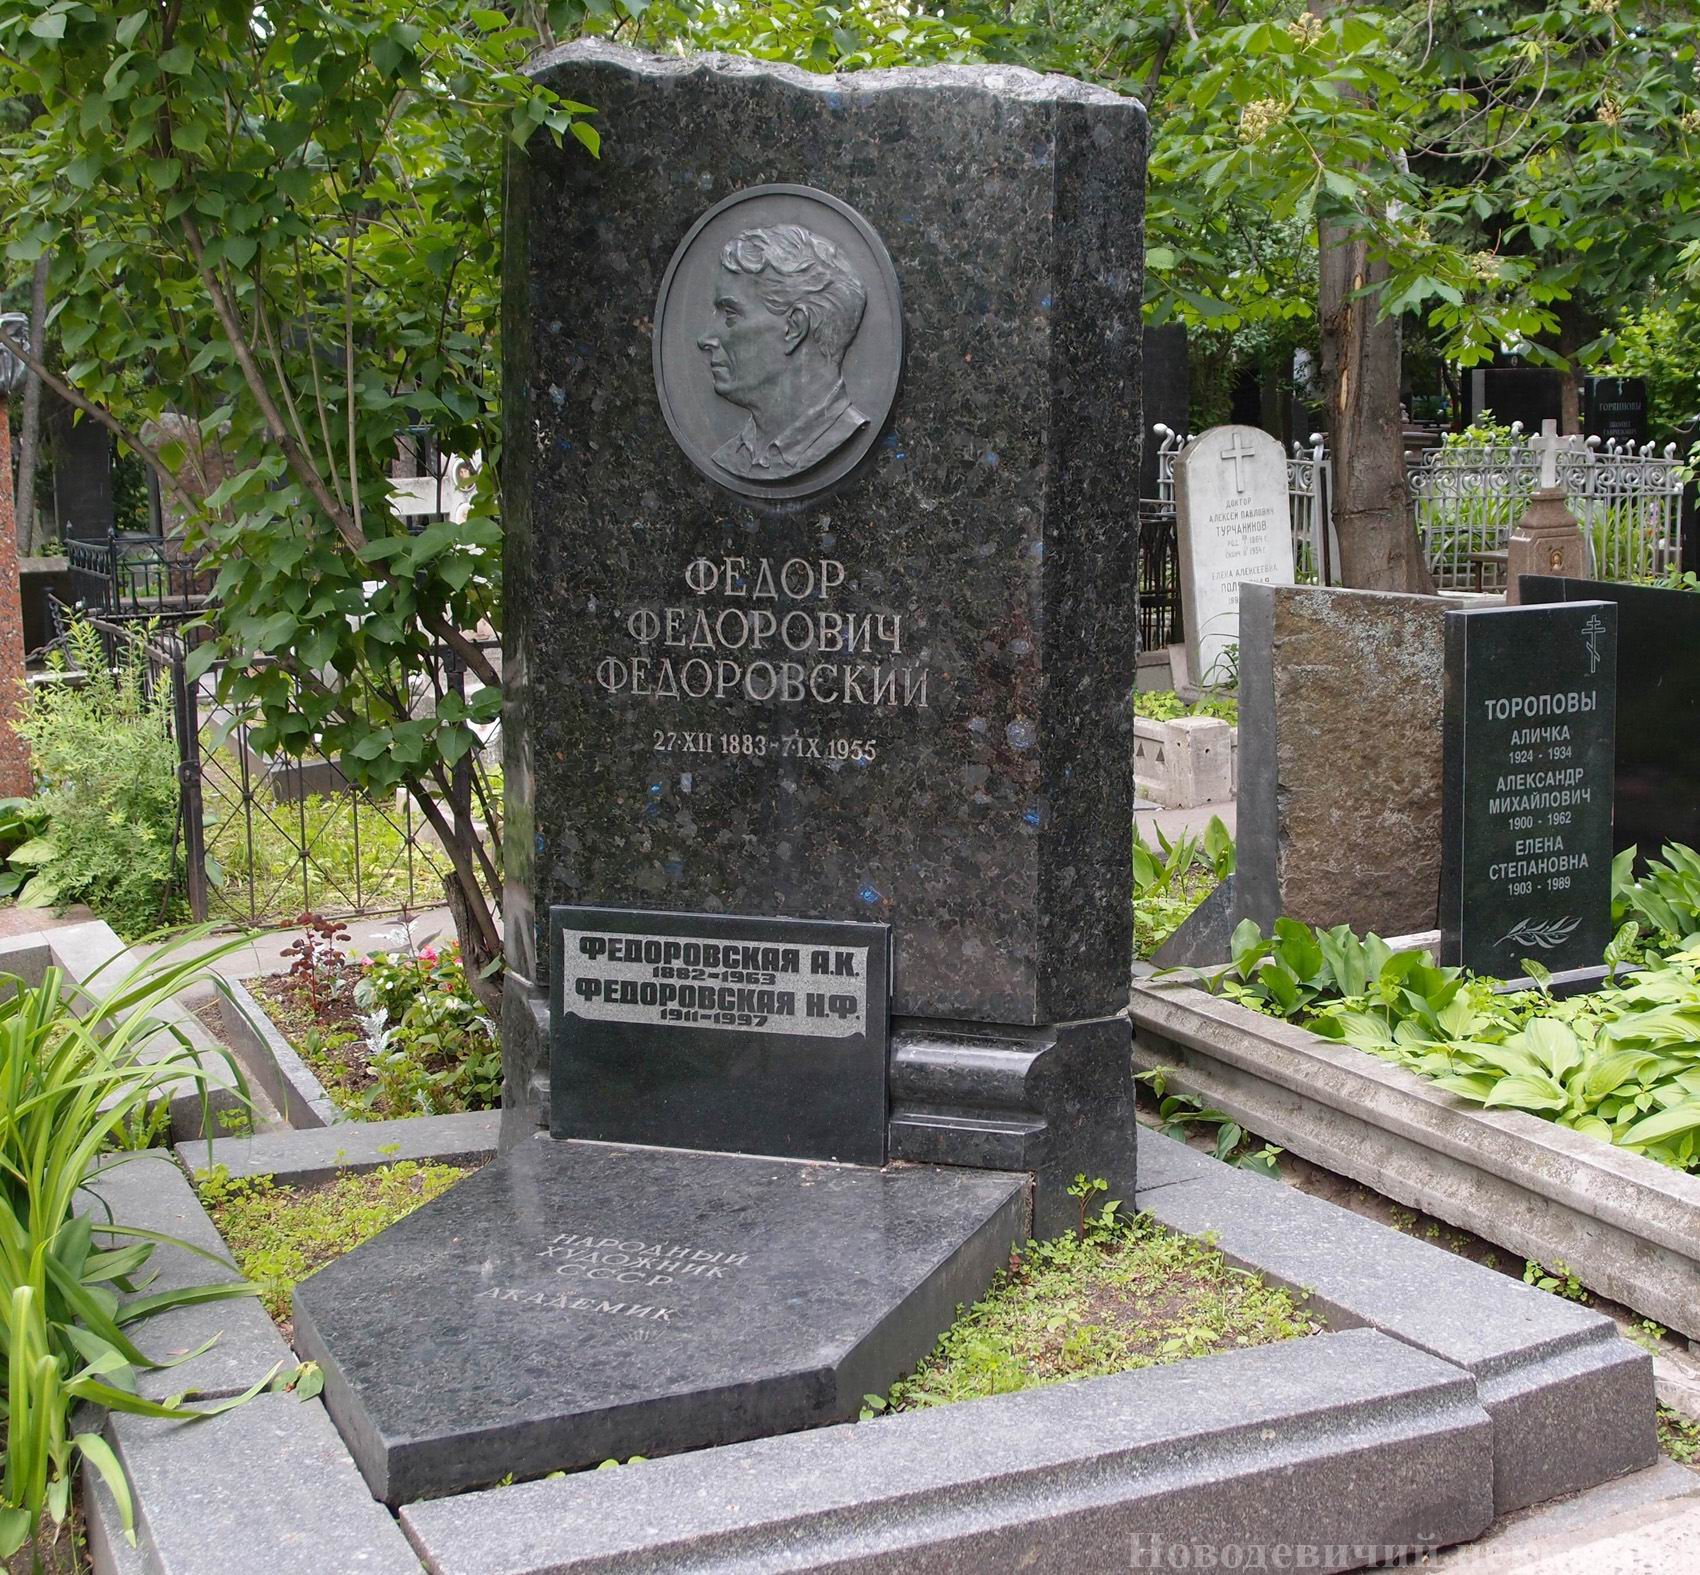 Памятник на могиле Федоровского Ф.Ф. (1883-1955), ск. М.Ярославская, худ. Н.Федоровская, на Новодевичьем кладбище (1-14-3).